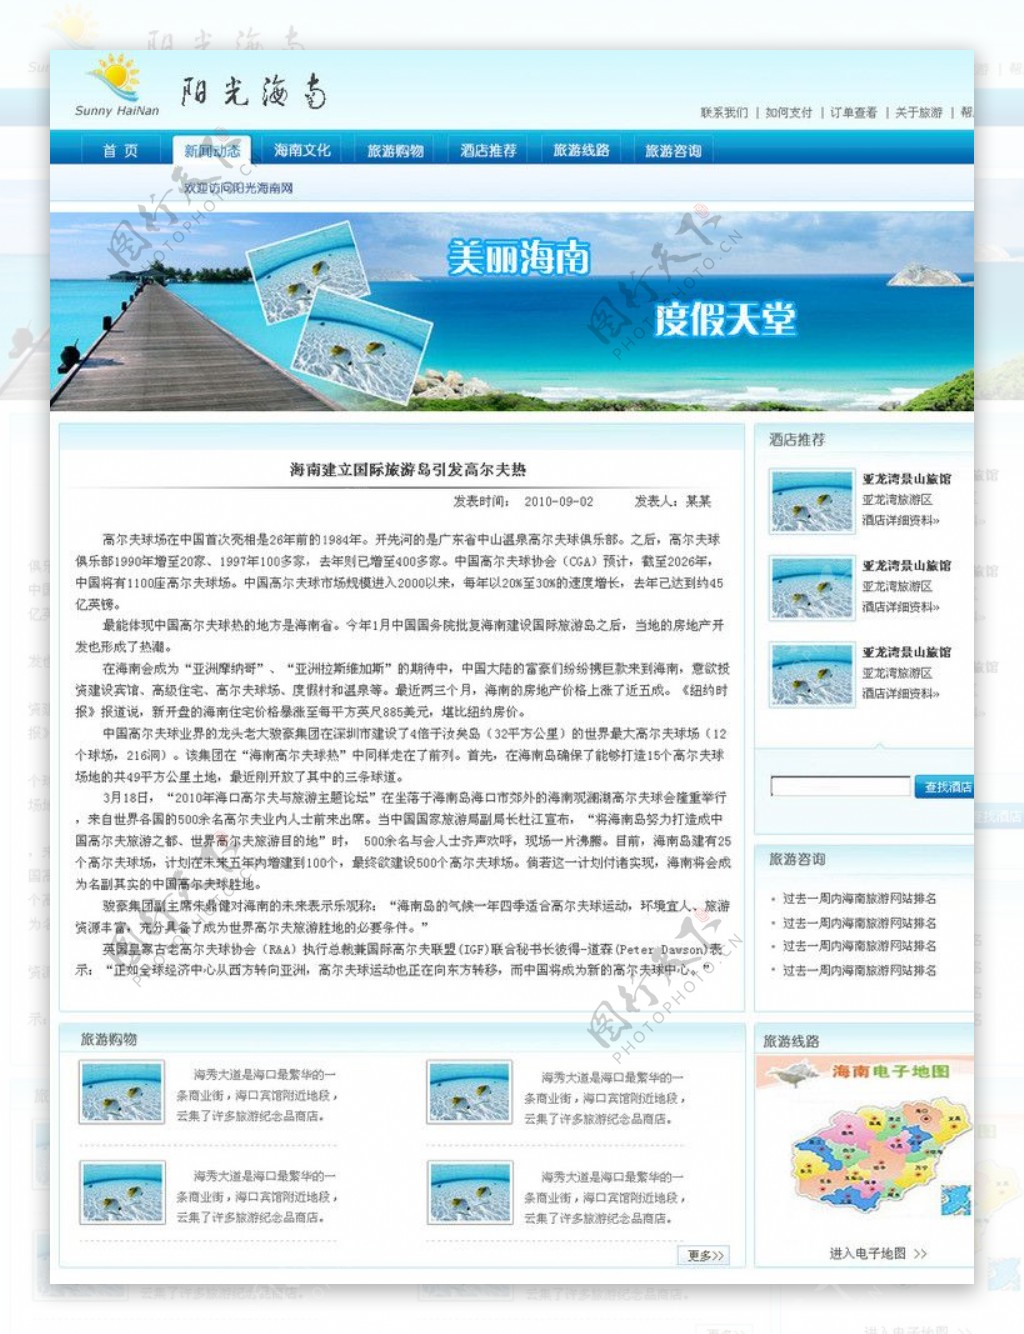 阳光海南新闻页面图片